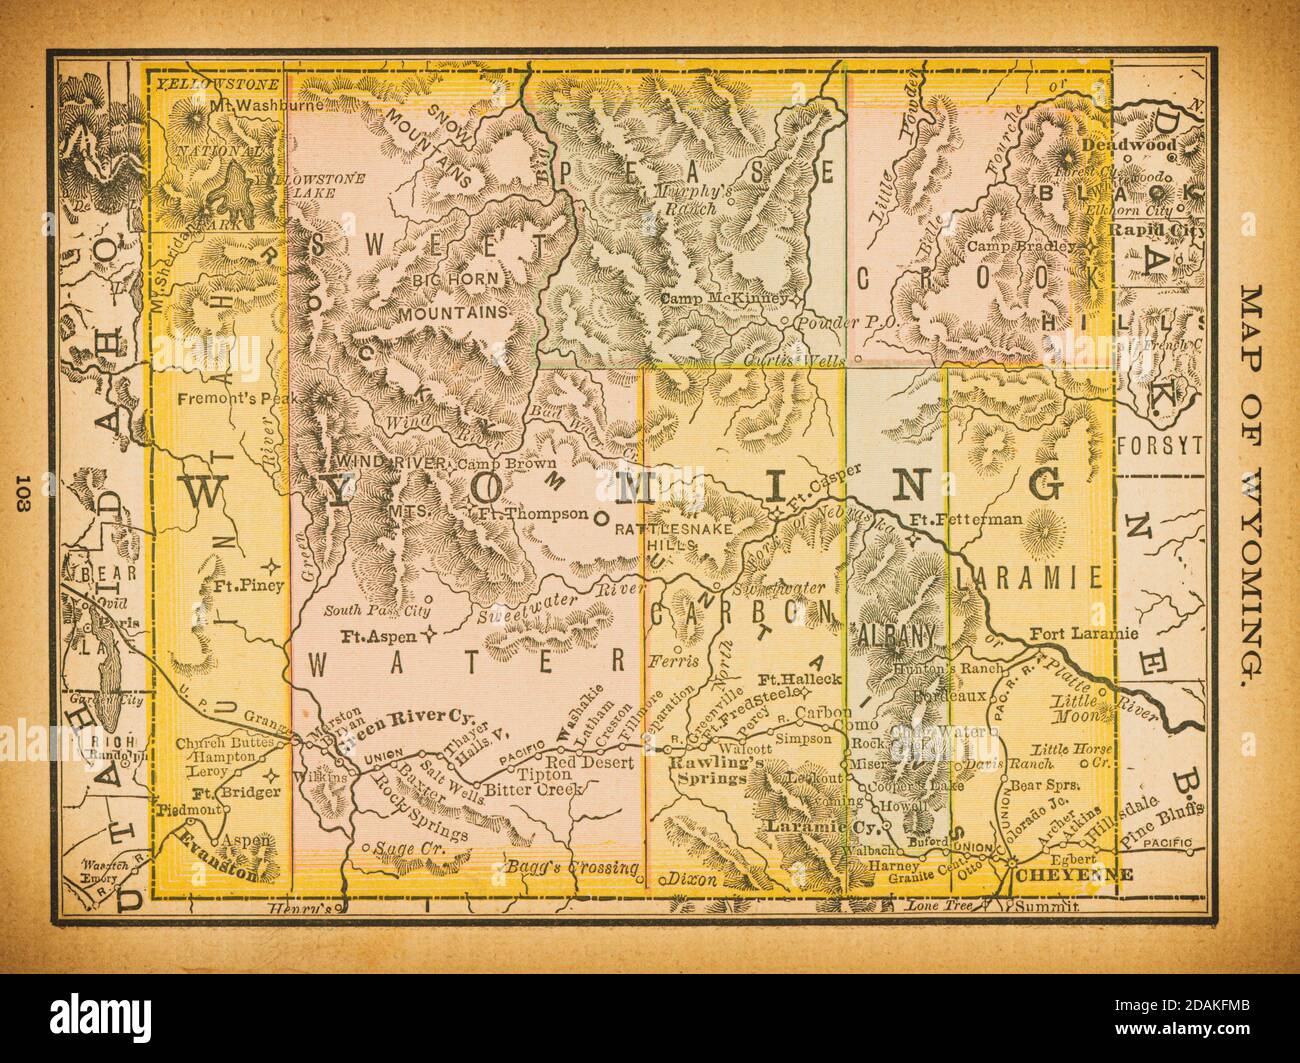 Mappa del Wyoming del XIX secolo. Pubblicato in New Dollar Atlas degli Stati Uniti e Dominion del Canada. (Rand McNally & Co's, Chicago, 1884). Foto Stock